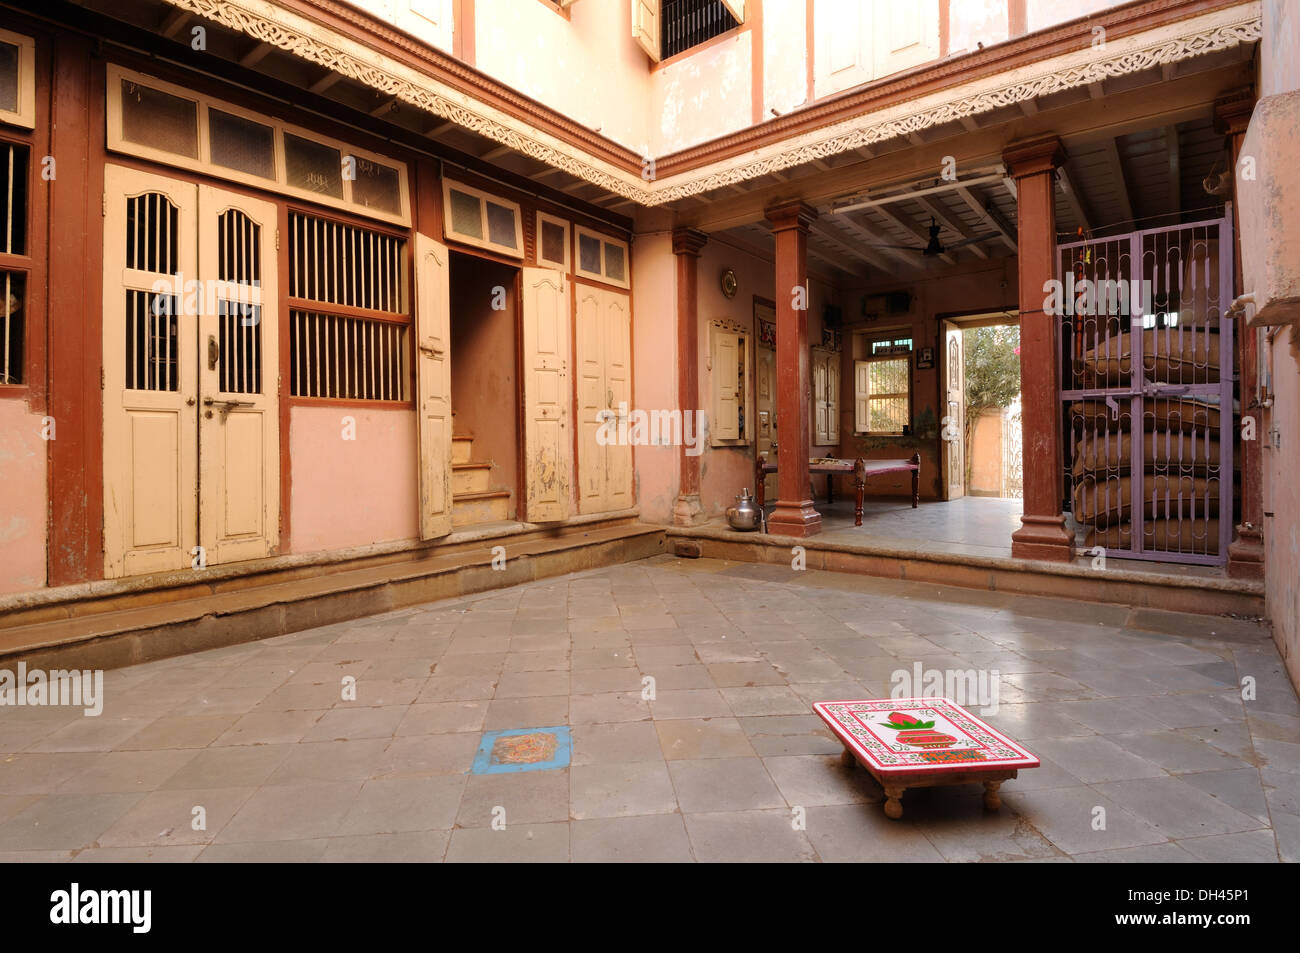 Cour intérieure de la maison de village indien Gujarat Inde Asie Banque D'Images